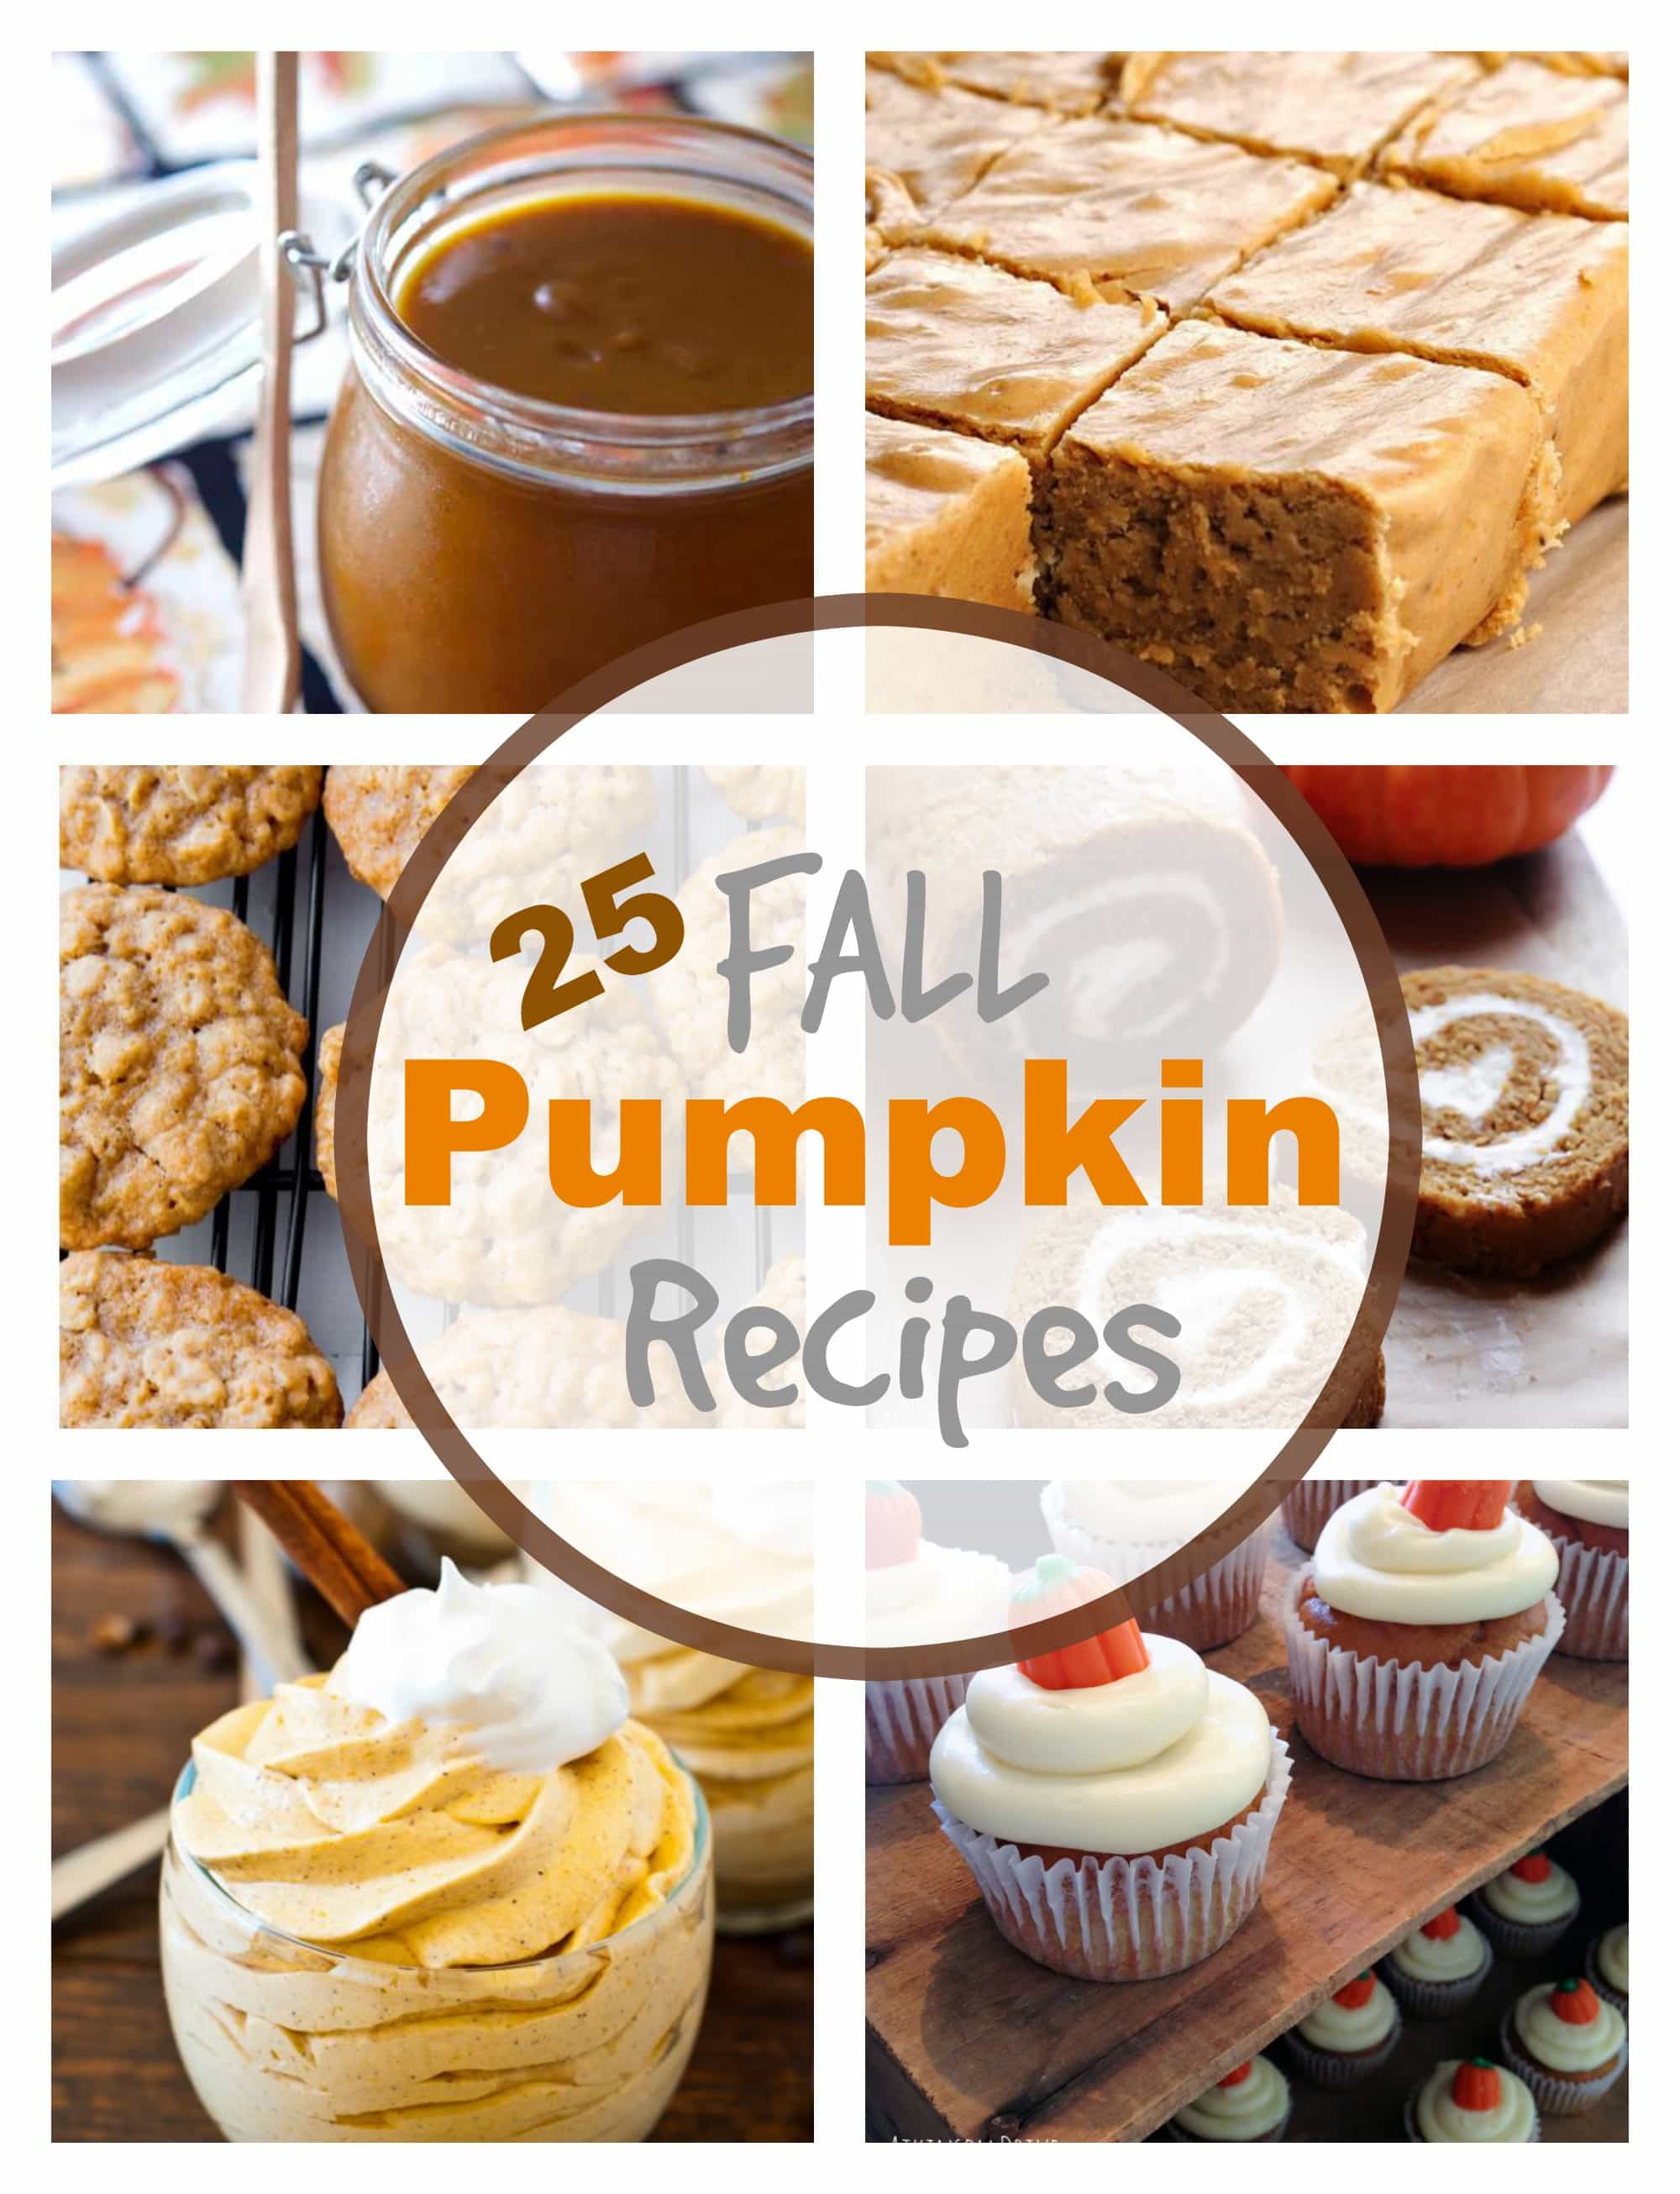 Fall Pumpkin Recipes
 25 Fall Pumpkin Recipes PinkWhen